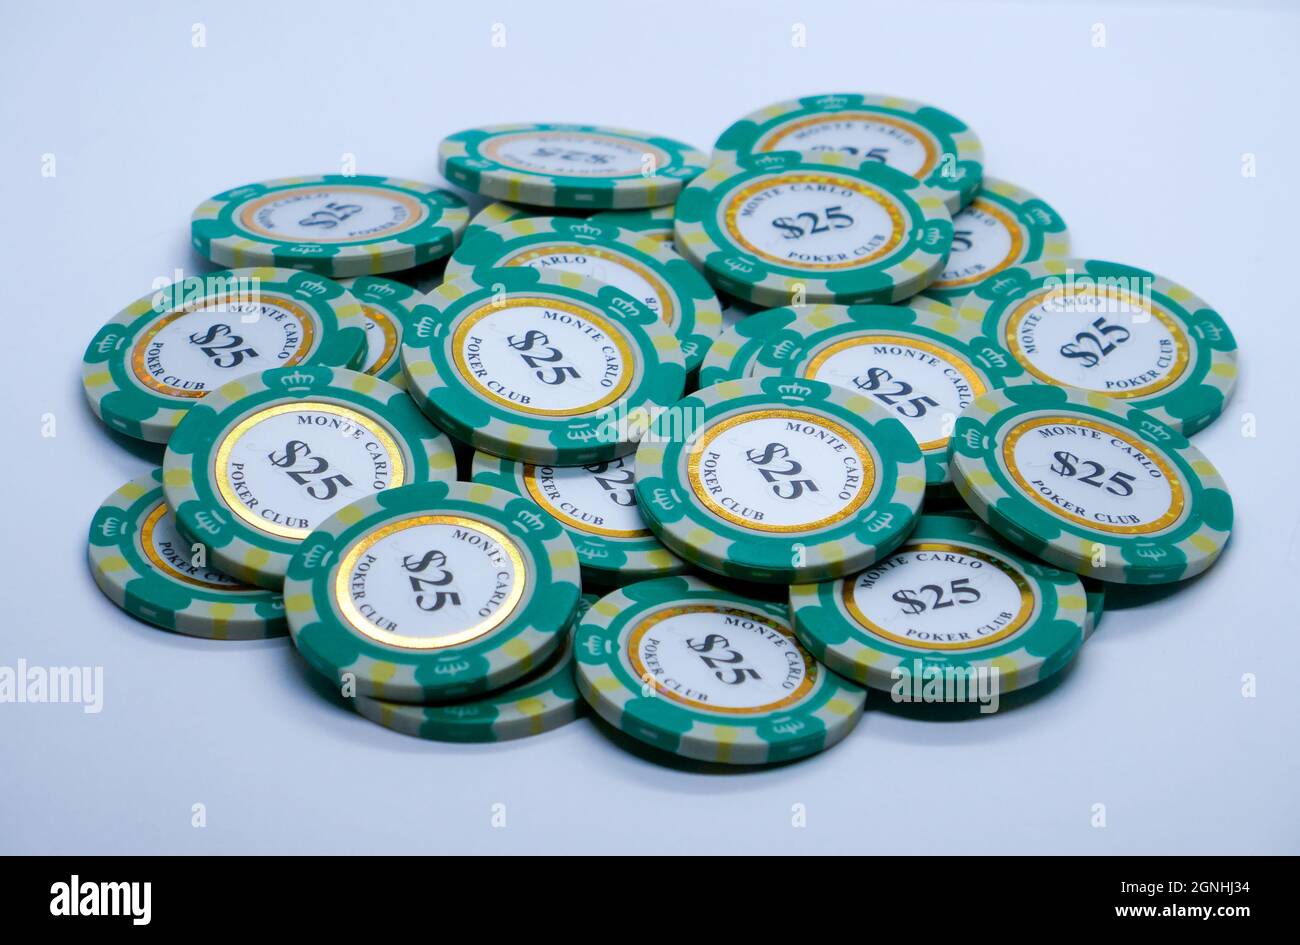 Stapel von Spielmarken der Größe 5-25 oder Haufen fallender realistischer Casino-Chips, volumetrisches Roulette und Blackjack, Sport-Poker-Geld oder Bargeld. Glücksspiel und Erfolg Stockfoto